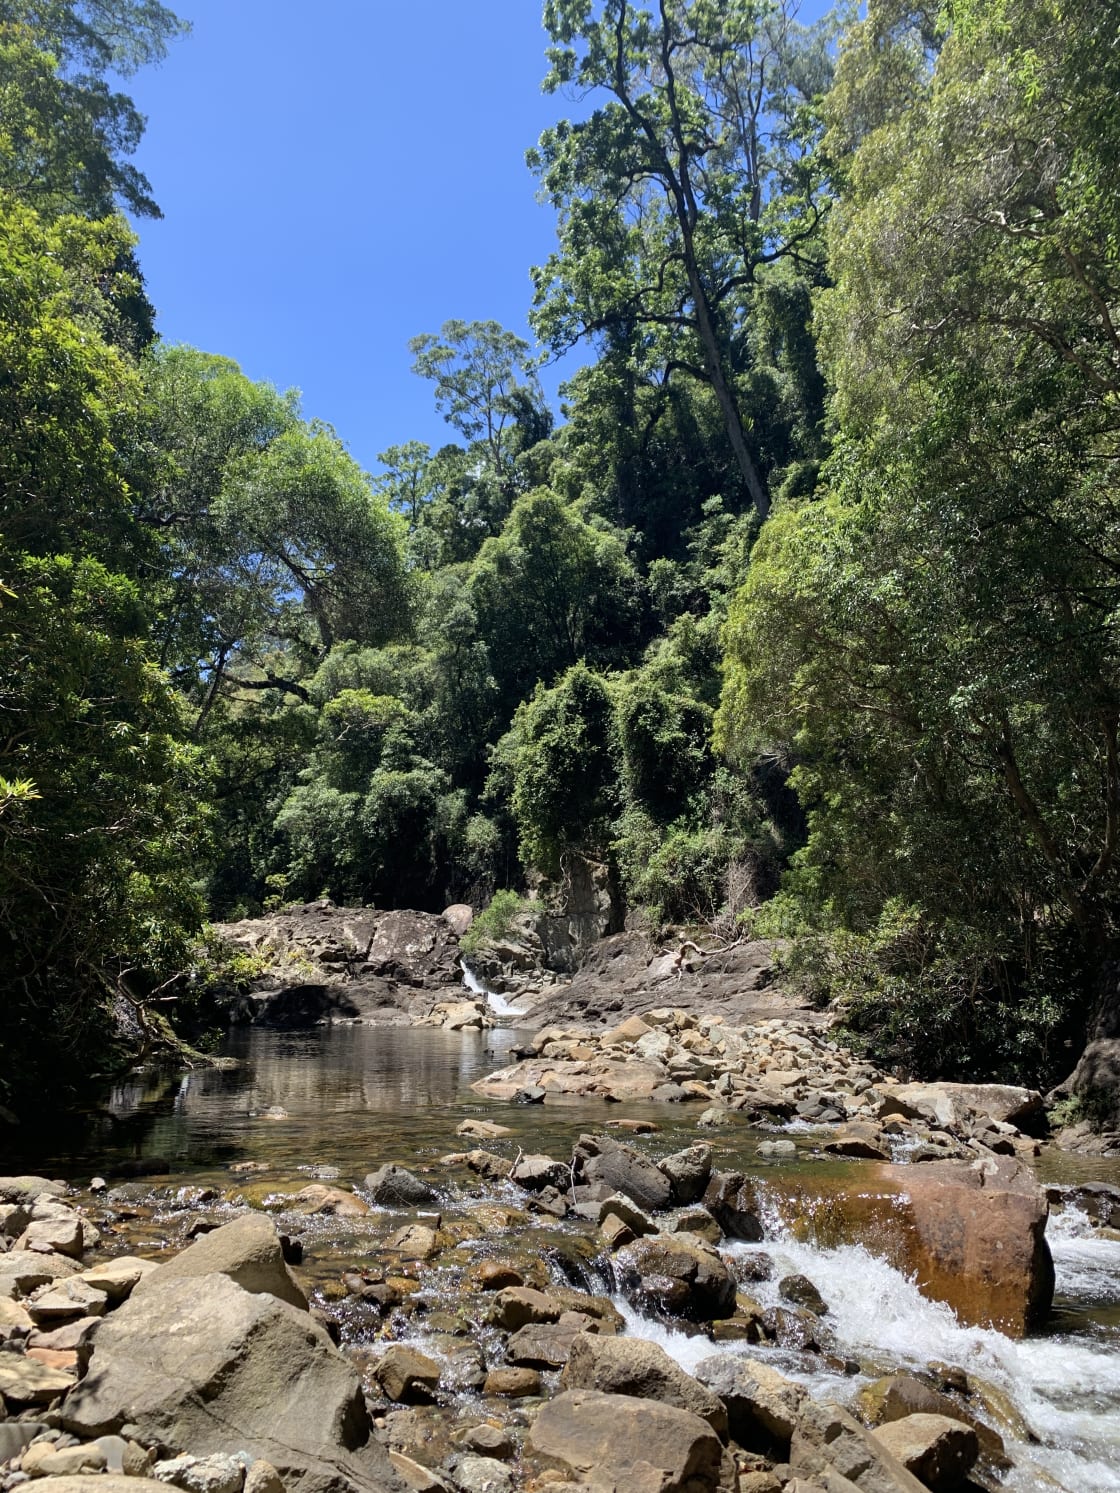 Kangaroo River at the Bottom of Missingham Steps